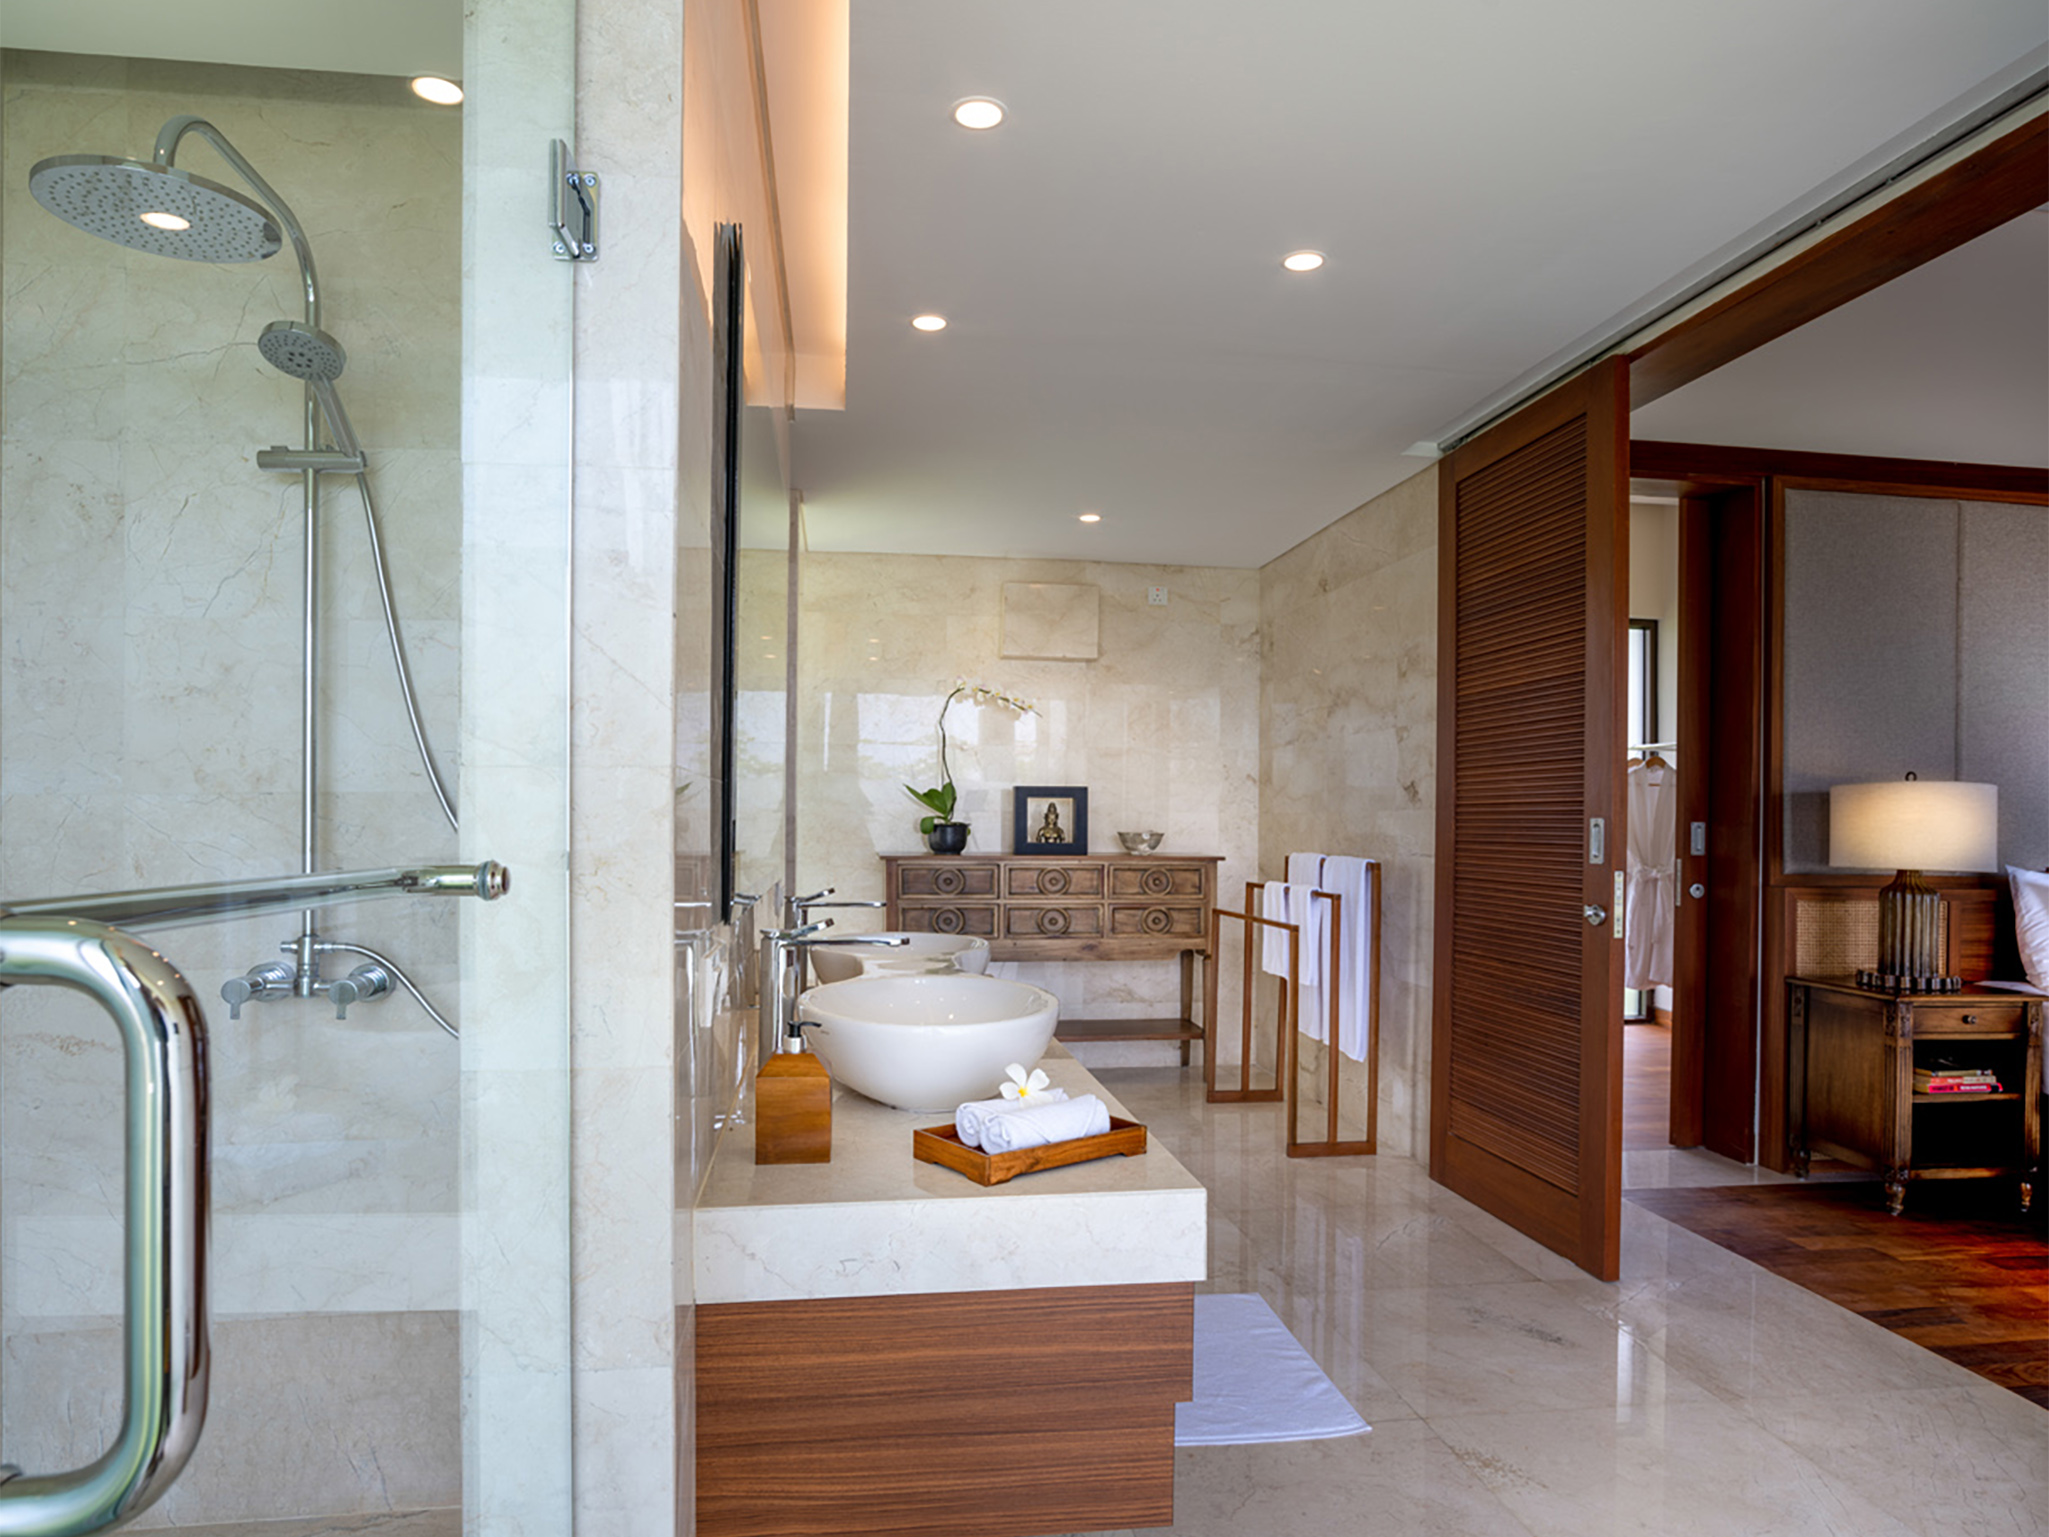 Villa Kailasha - Ensuite bath and shower stall - Villa Kailasha, Tabanan, Bali